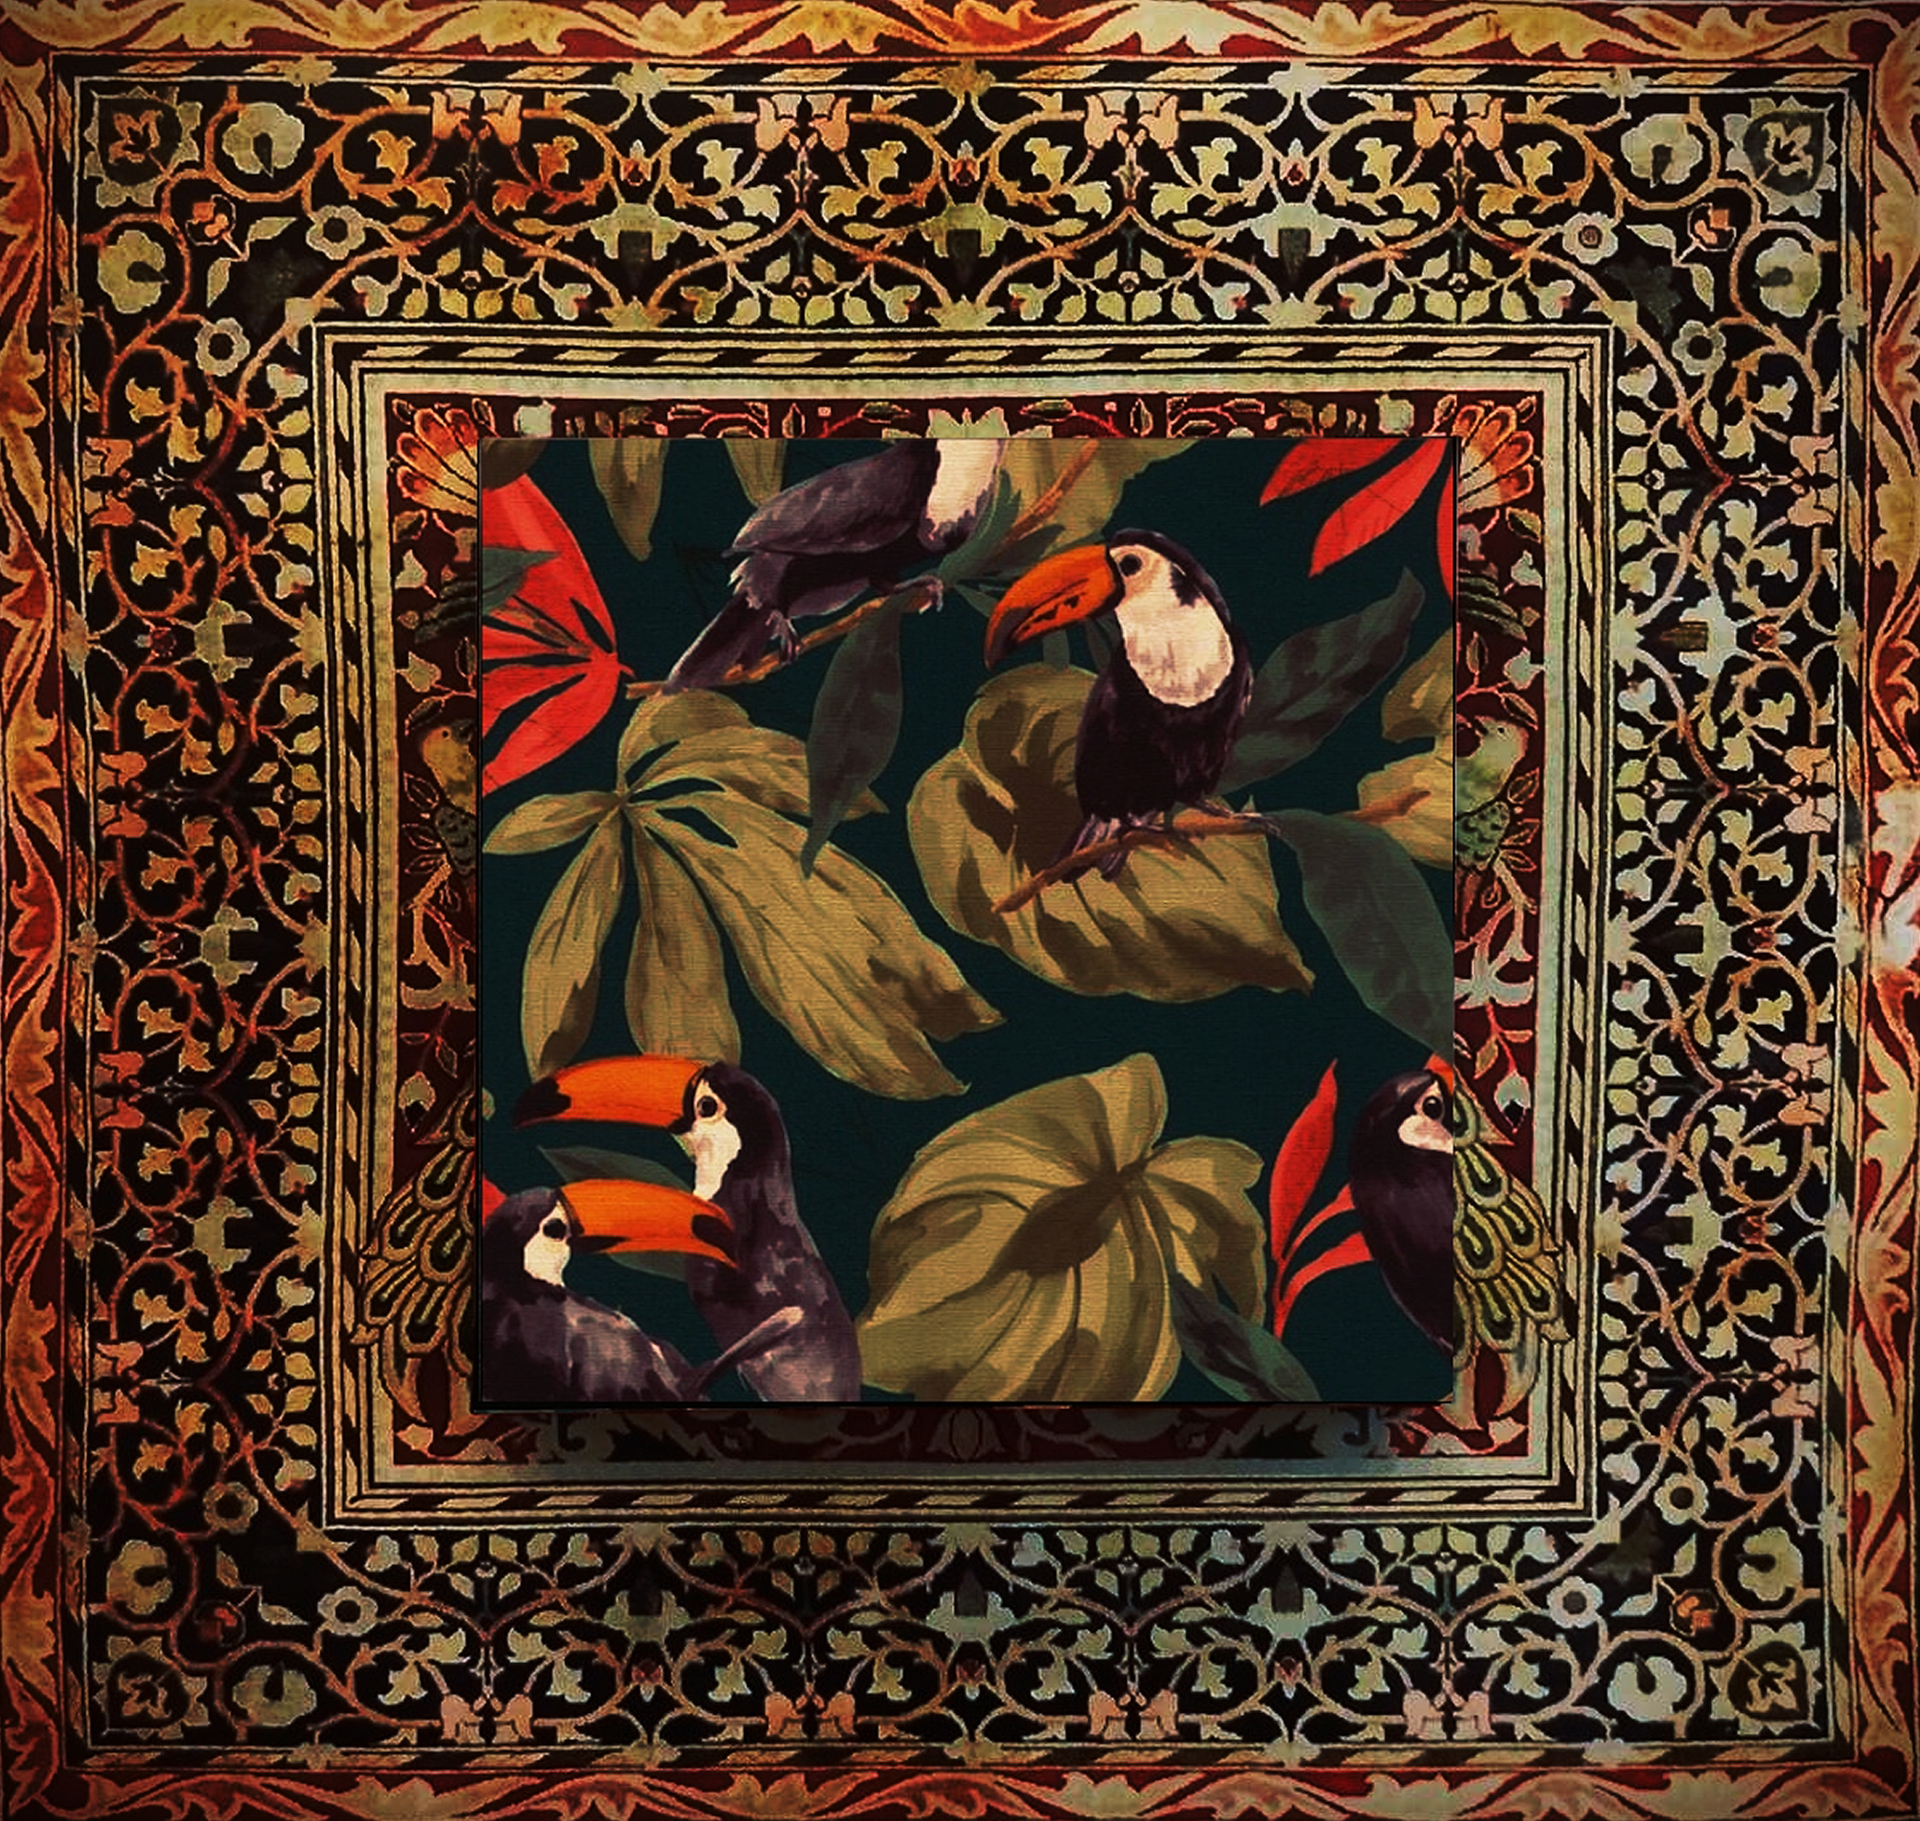  Kompozycja malarsko-graficzna (utrzymana w ciepłej, brązowo-czerwonawo-oliwkowej tomacji) odwzorowująca XIX-wieczne i współczesne tapety.